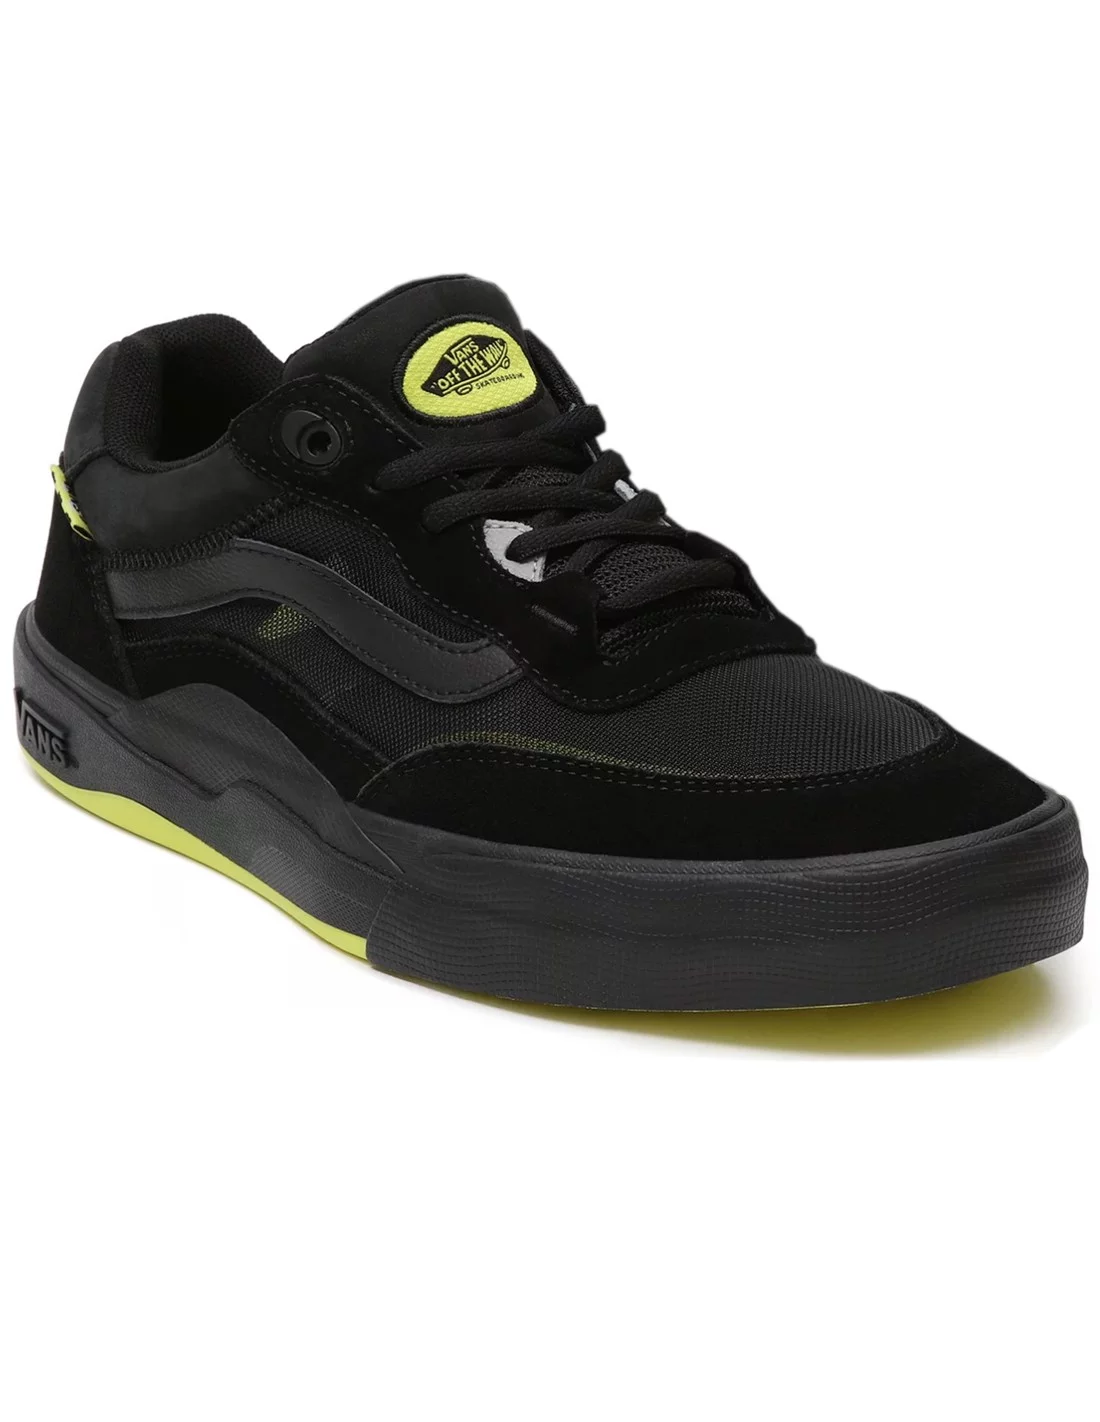 VANS Wayvee - Black/Sulphur - Skate shoes